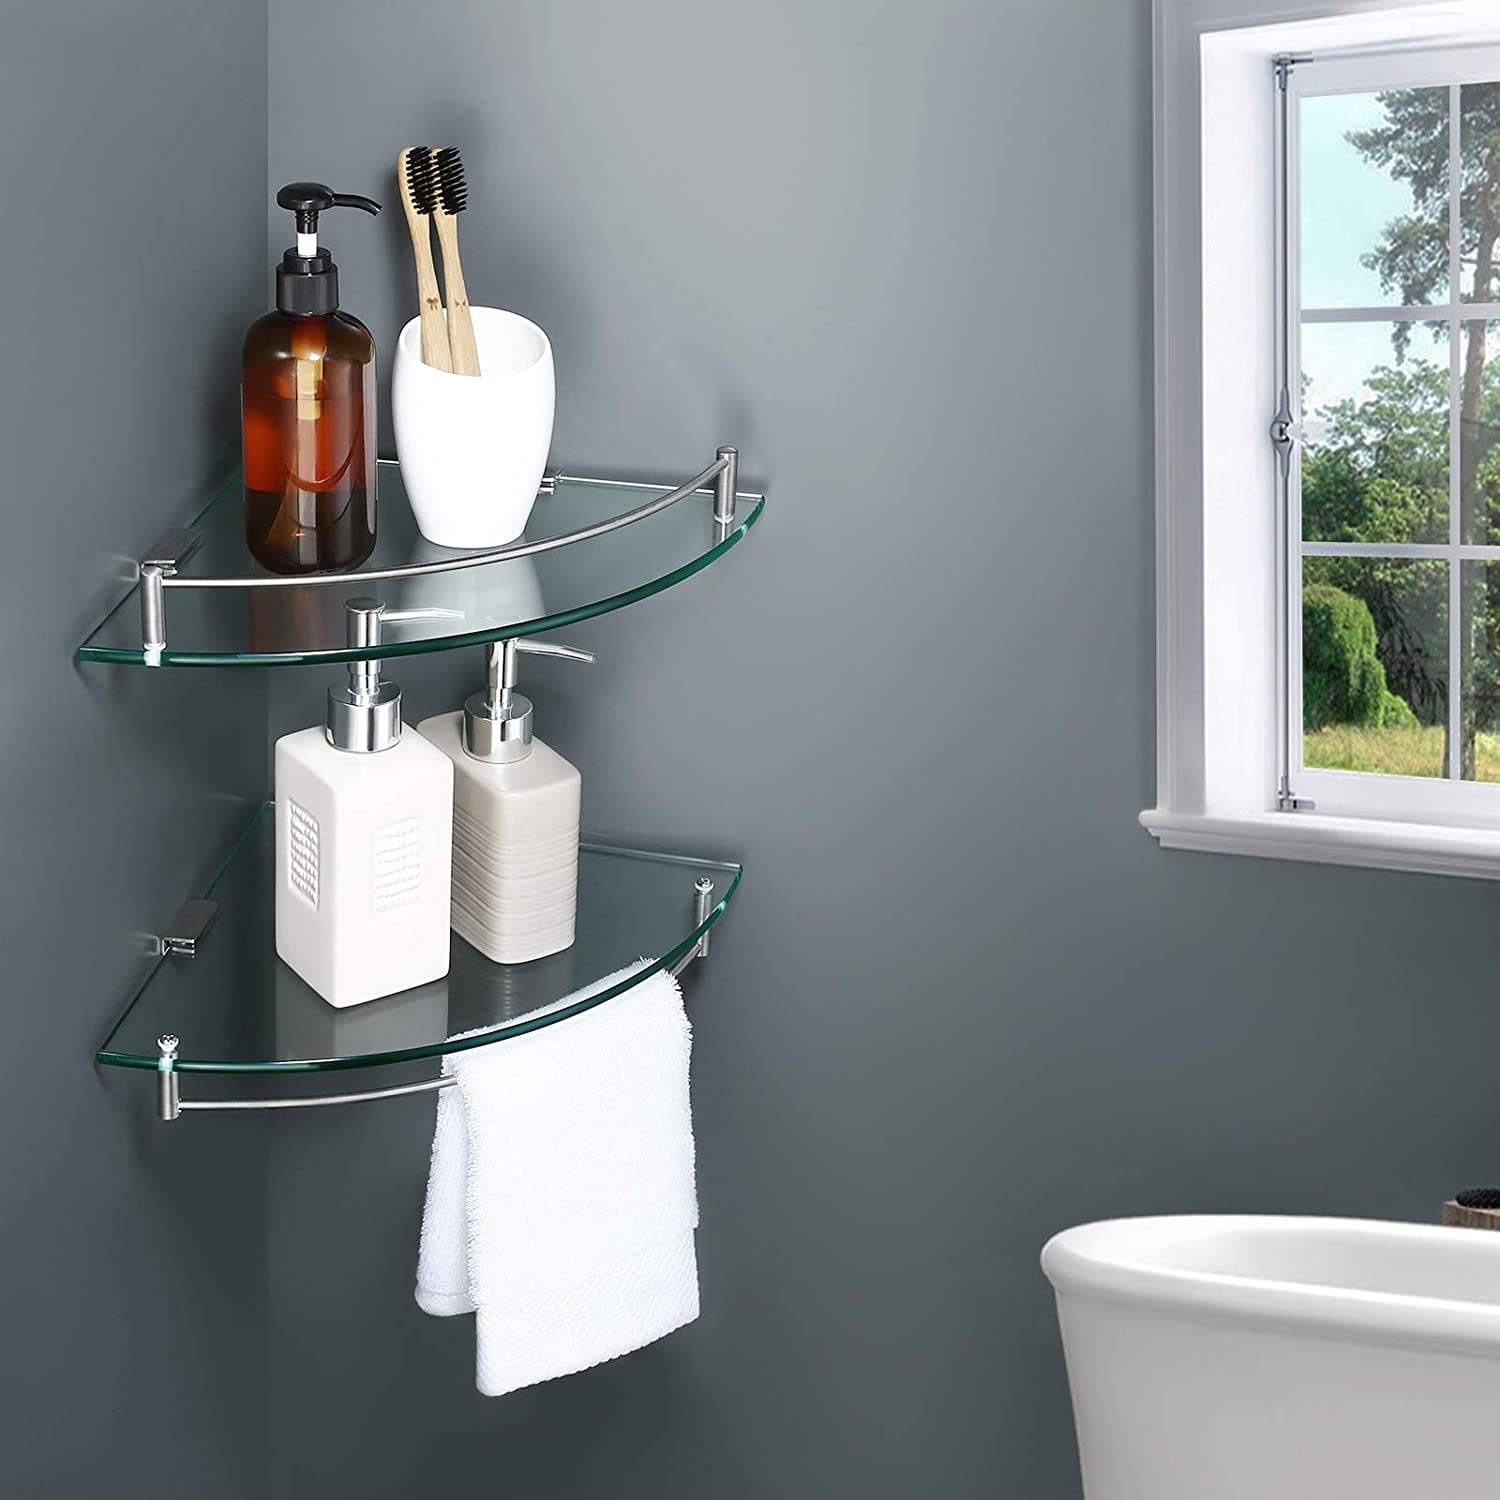 YorkHoMo Glass Corner Shelf Glass Shelves for Bathroom Shower